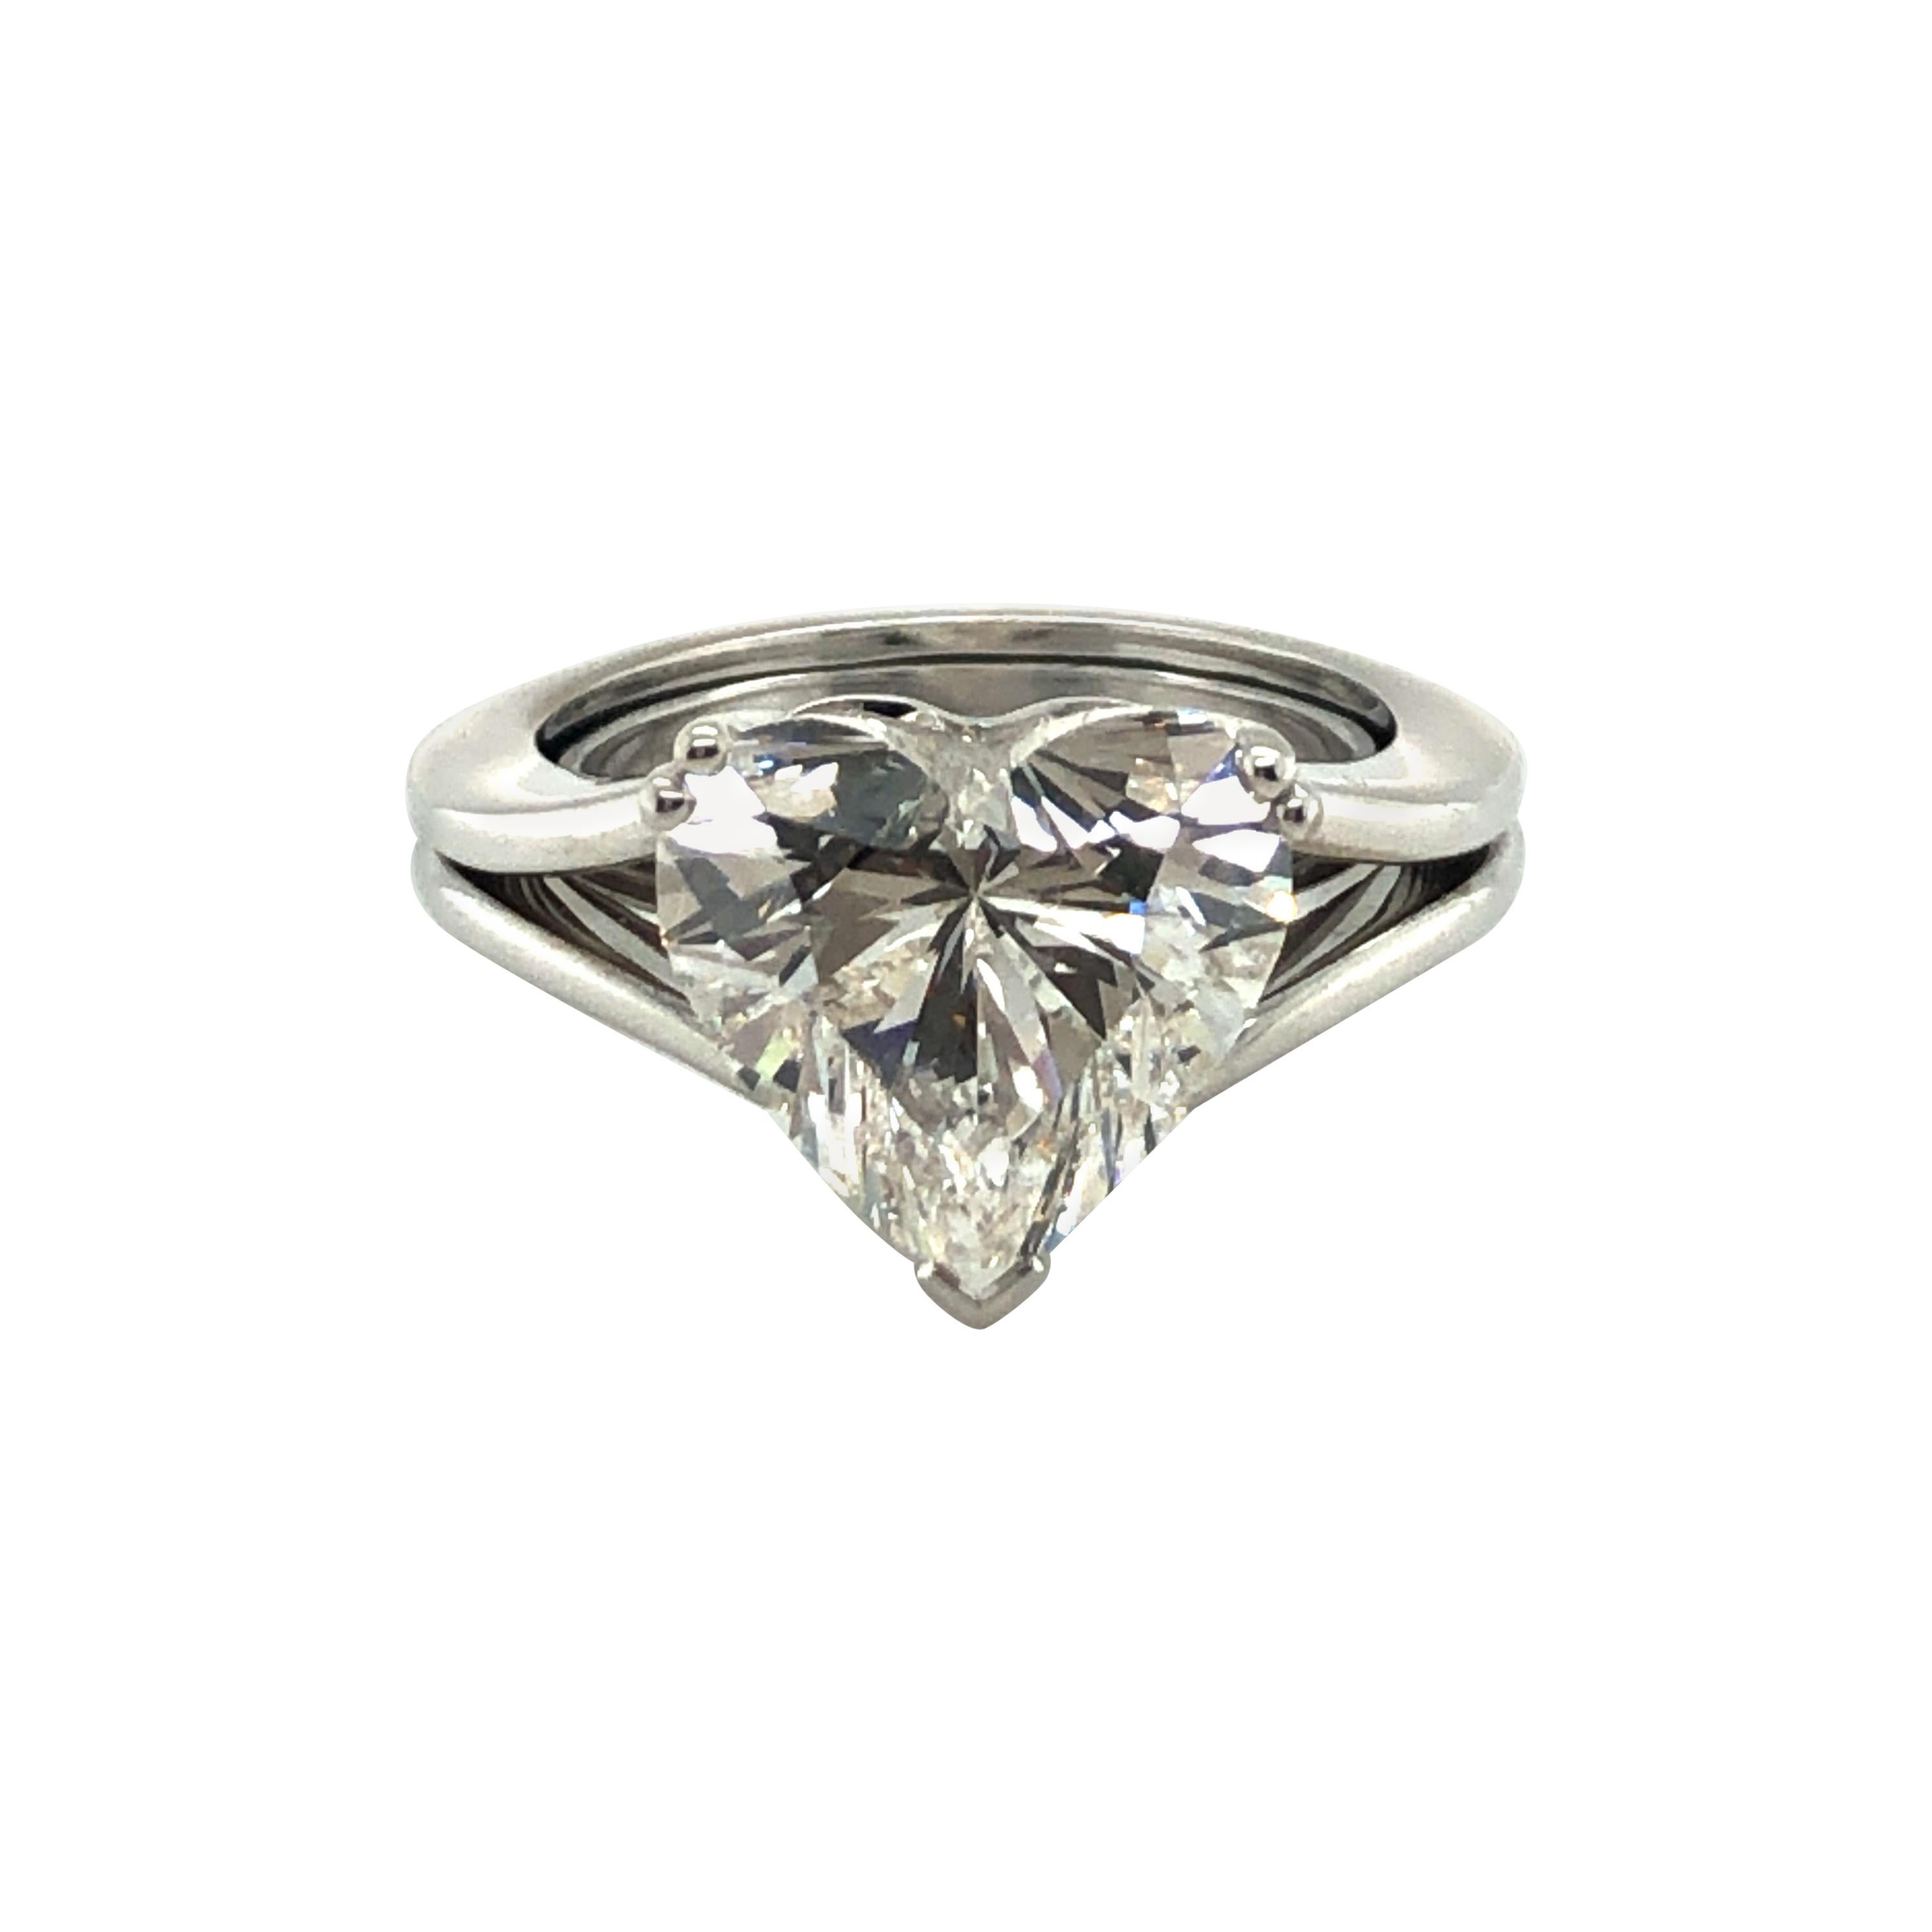 GIA Certified 5.04 Carat Heart-Shaped Diamond Ring in 18 Karat White Gold